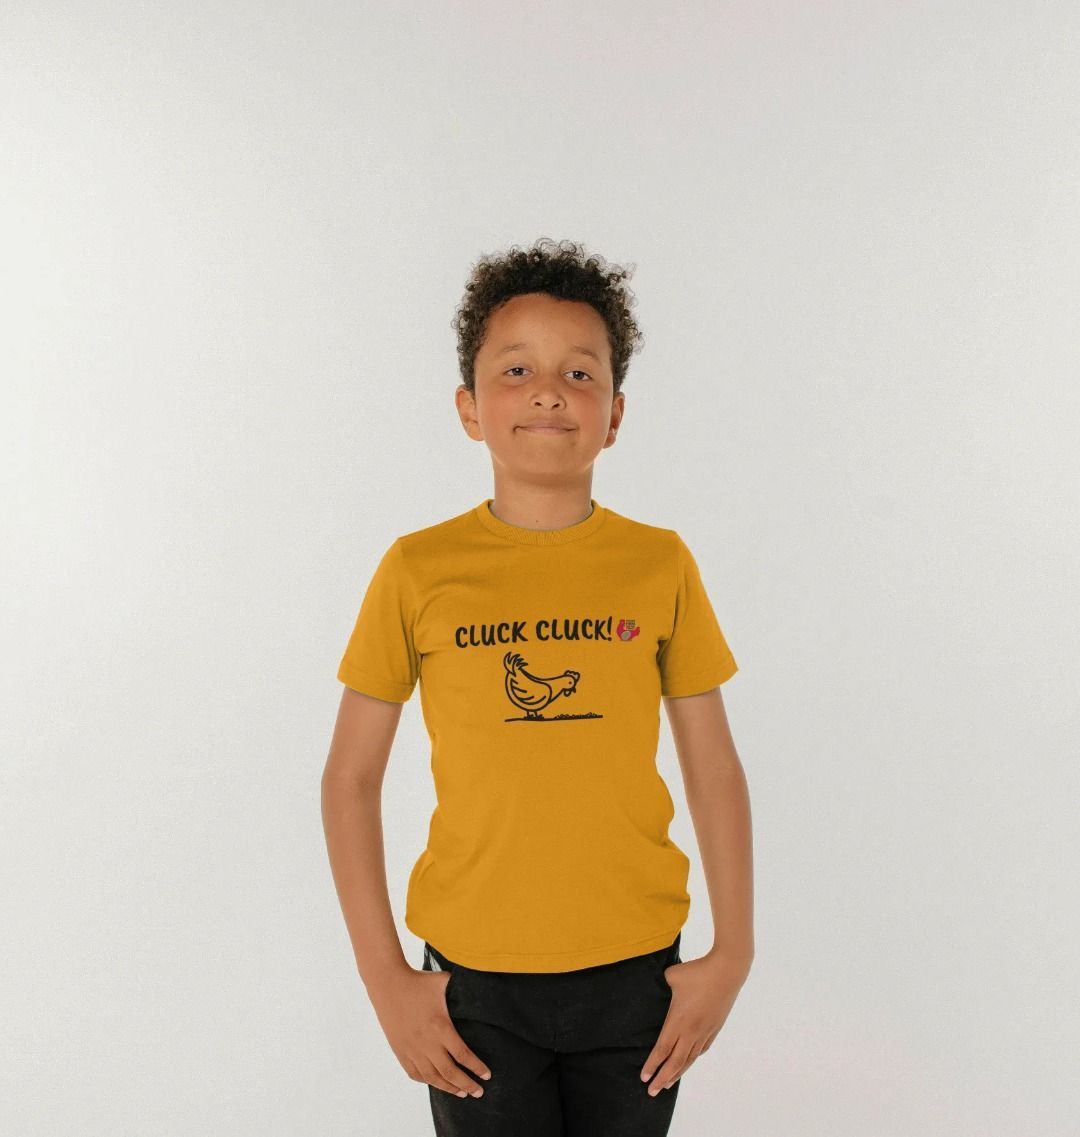 CLUCK CLUCK! Kids Unisex Short Sleeve T-Shirt